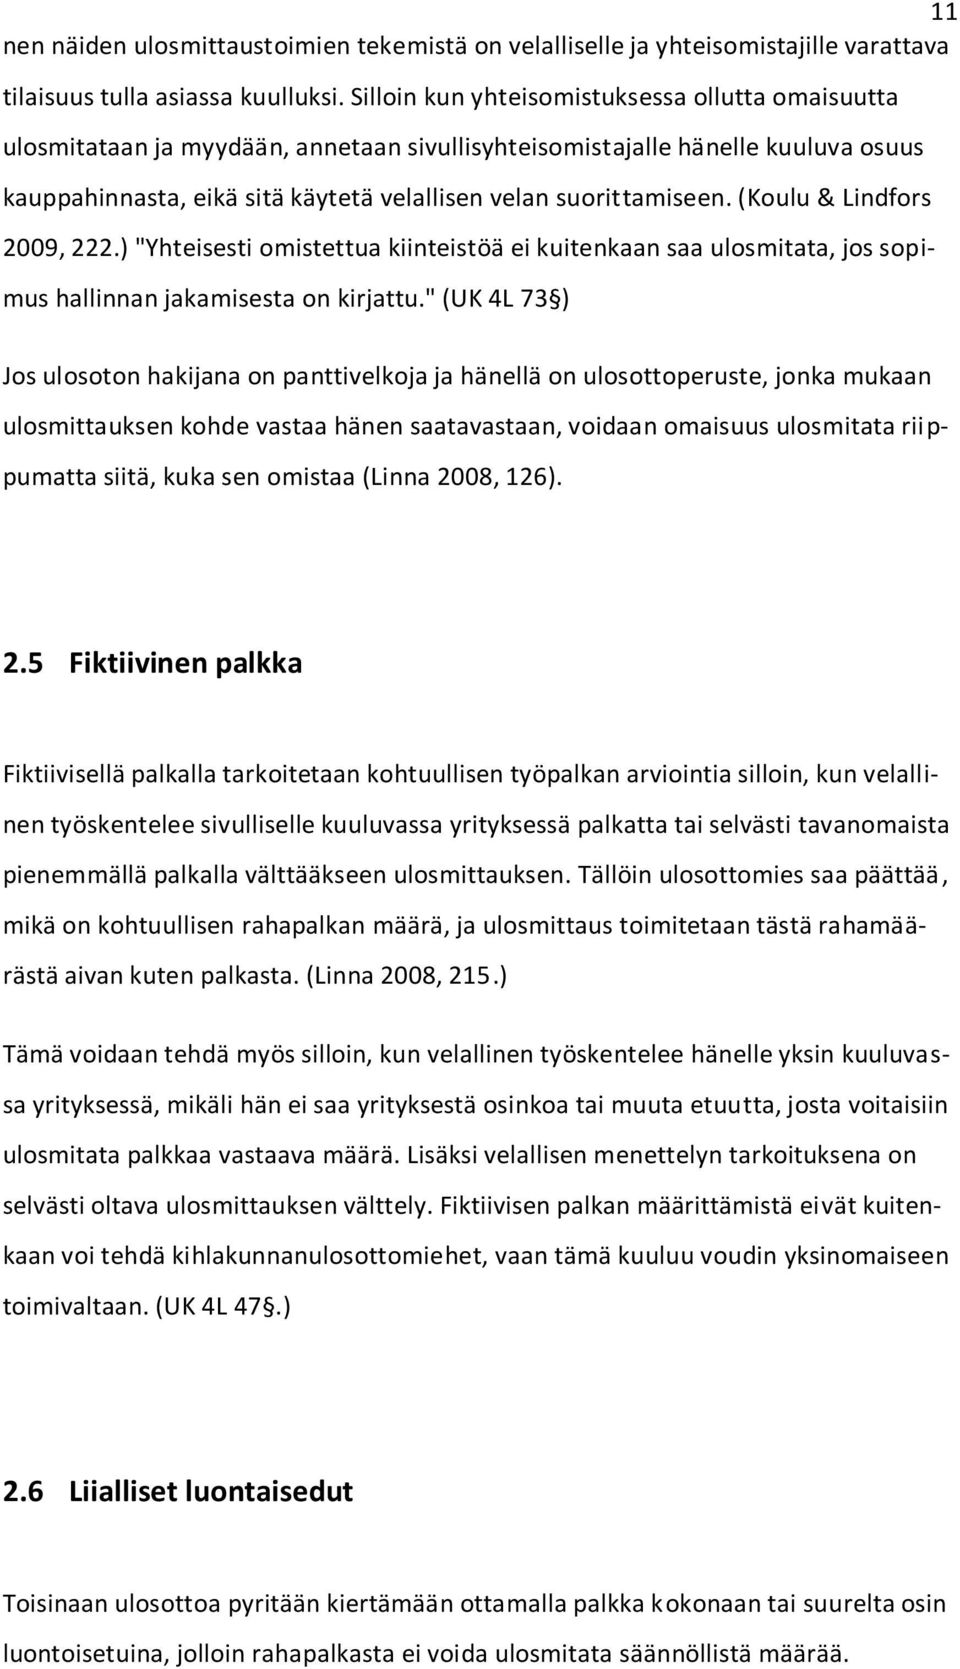 (Koulu & Lindfors 2009, 222.) "Yhteisesti omistettua kiinteistöä ei kuitenkaan saa ulosmitata, jos sopimus hallinnan jakamisesta on kirjattu.